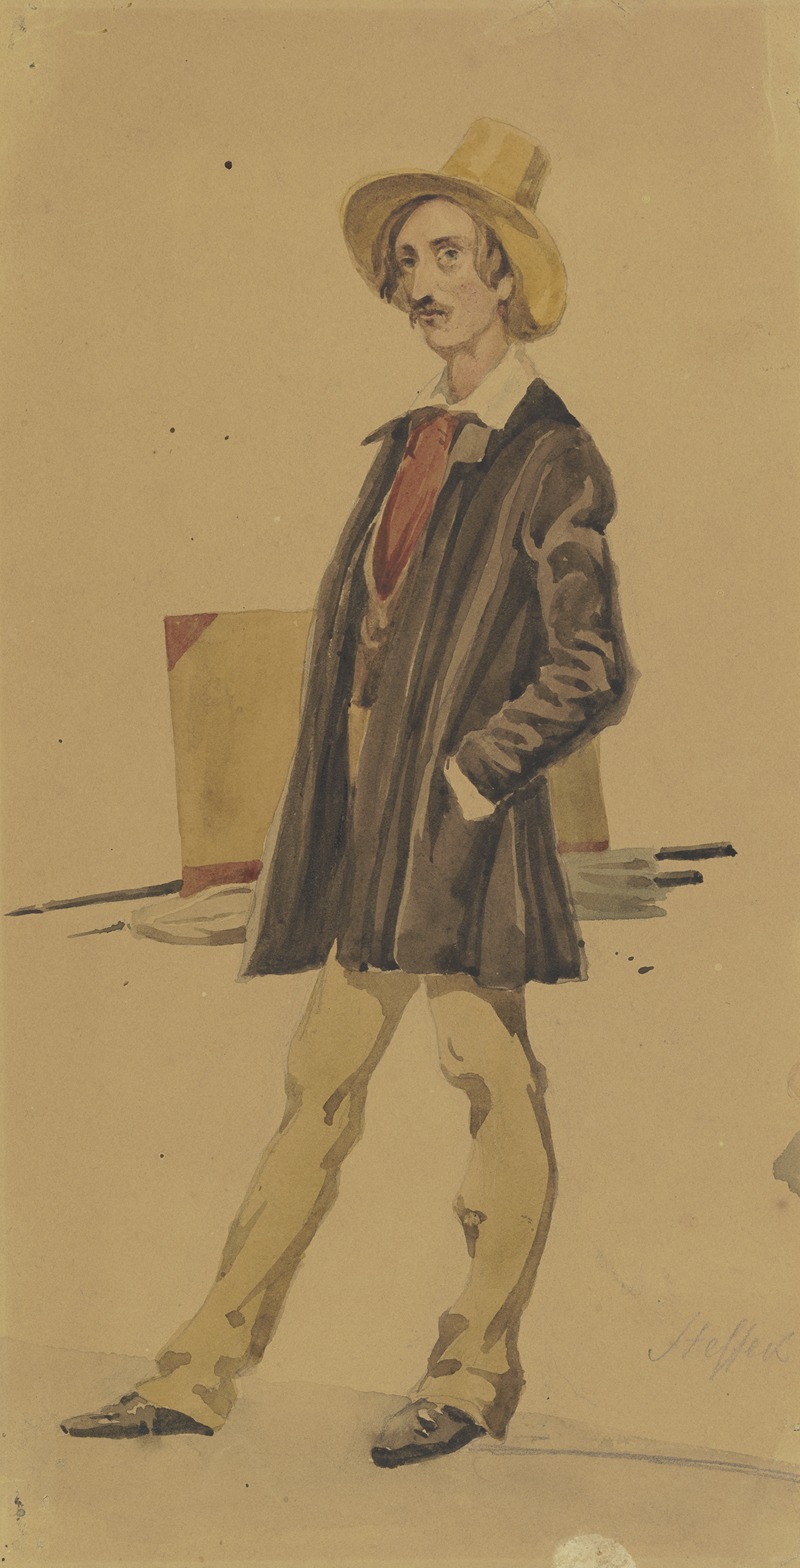 Carl Steffeck - Stehender Maler mit Malgerät (Pinsel, Mappe, Schirm)